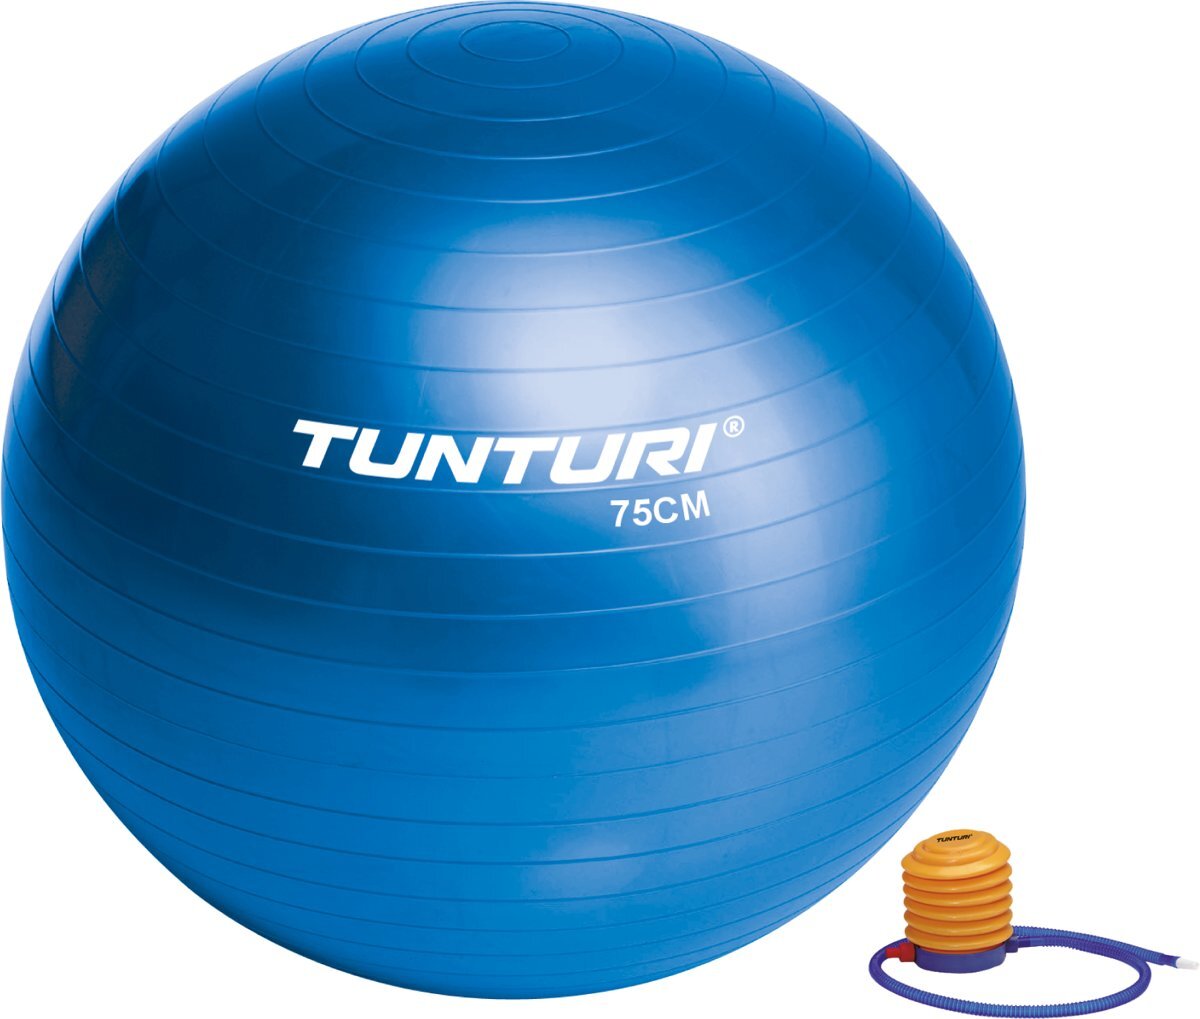 Tunturi Tunturi Fitnessbal Blauw - 75 cm